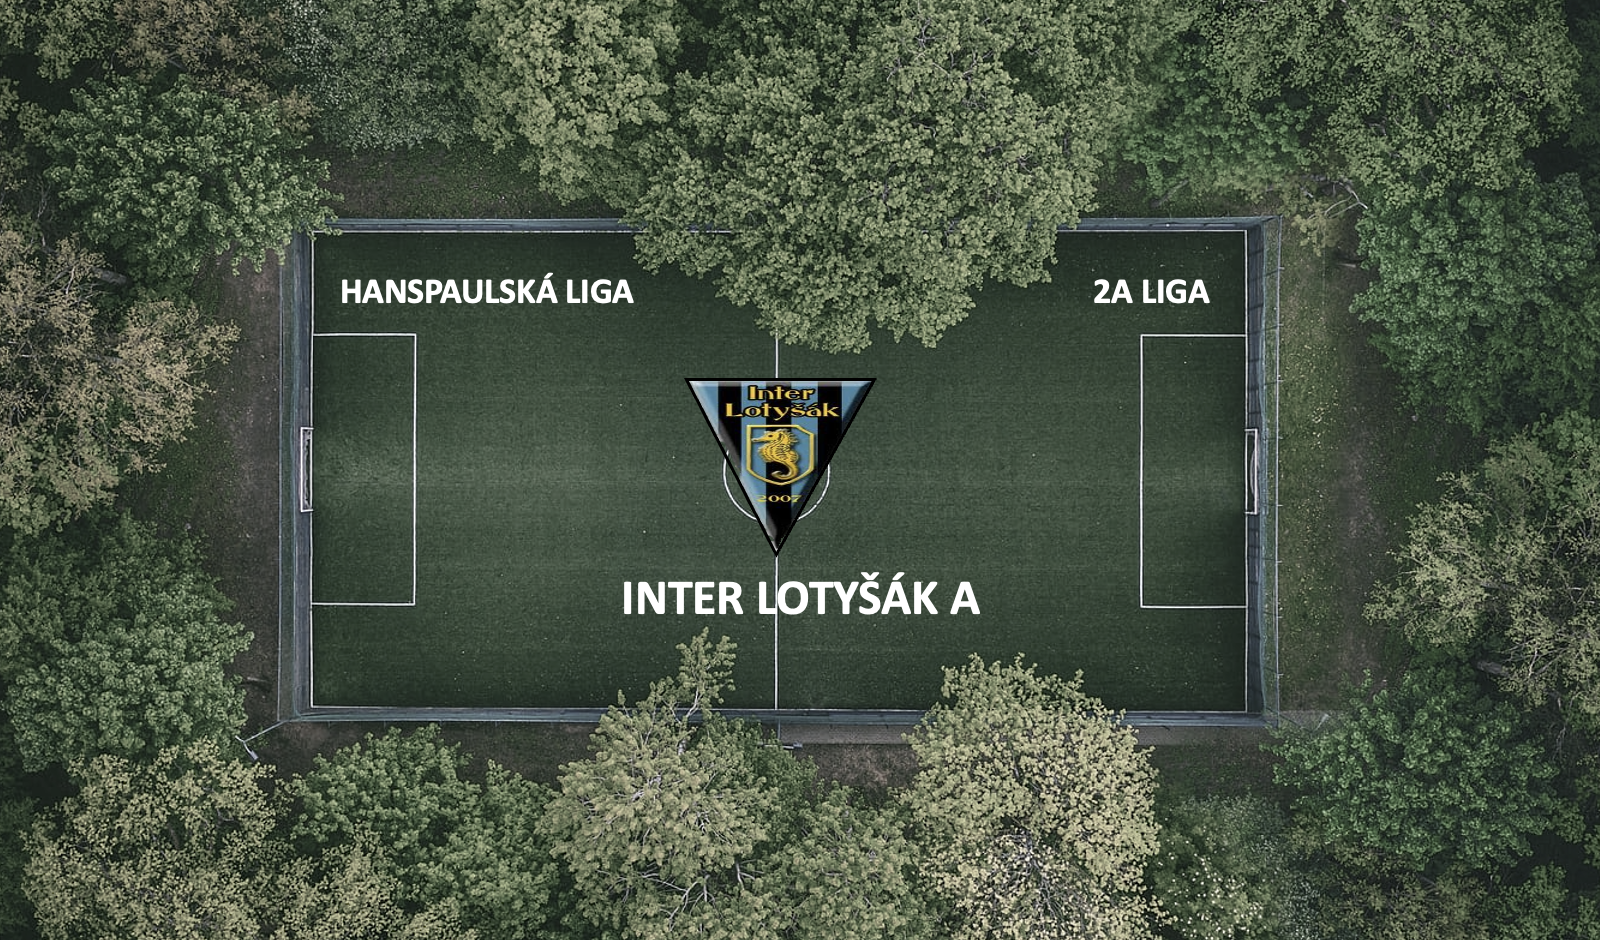 Inter Lotyšák A